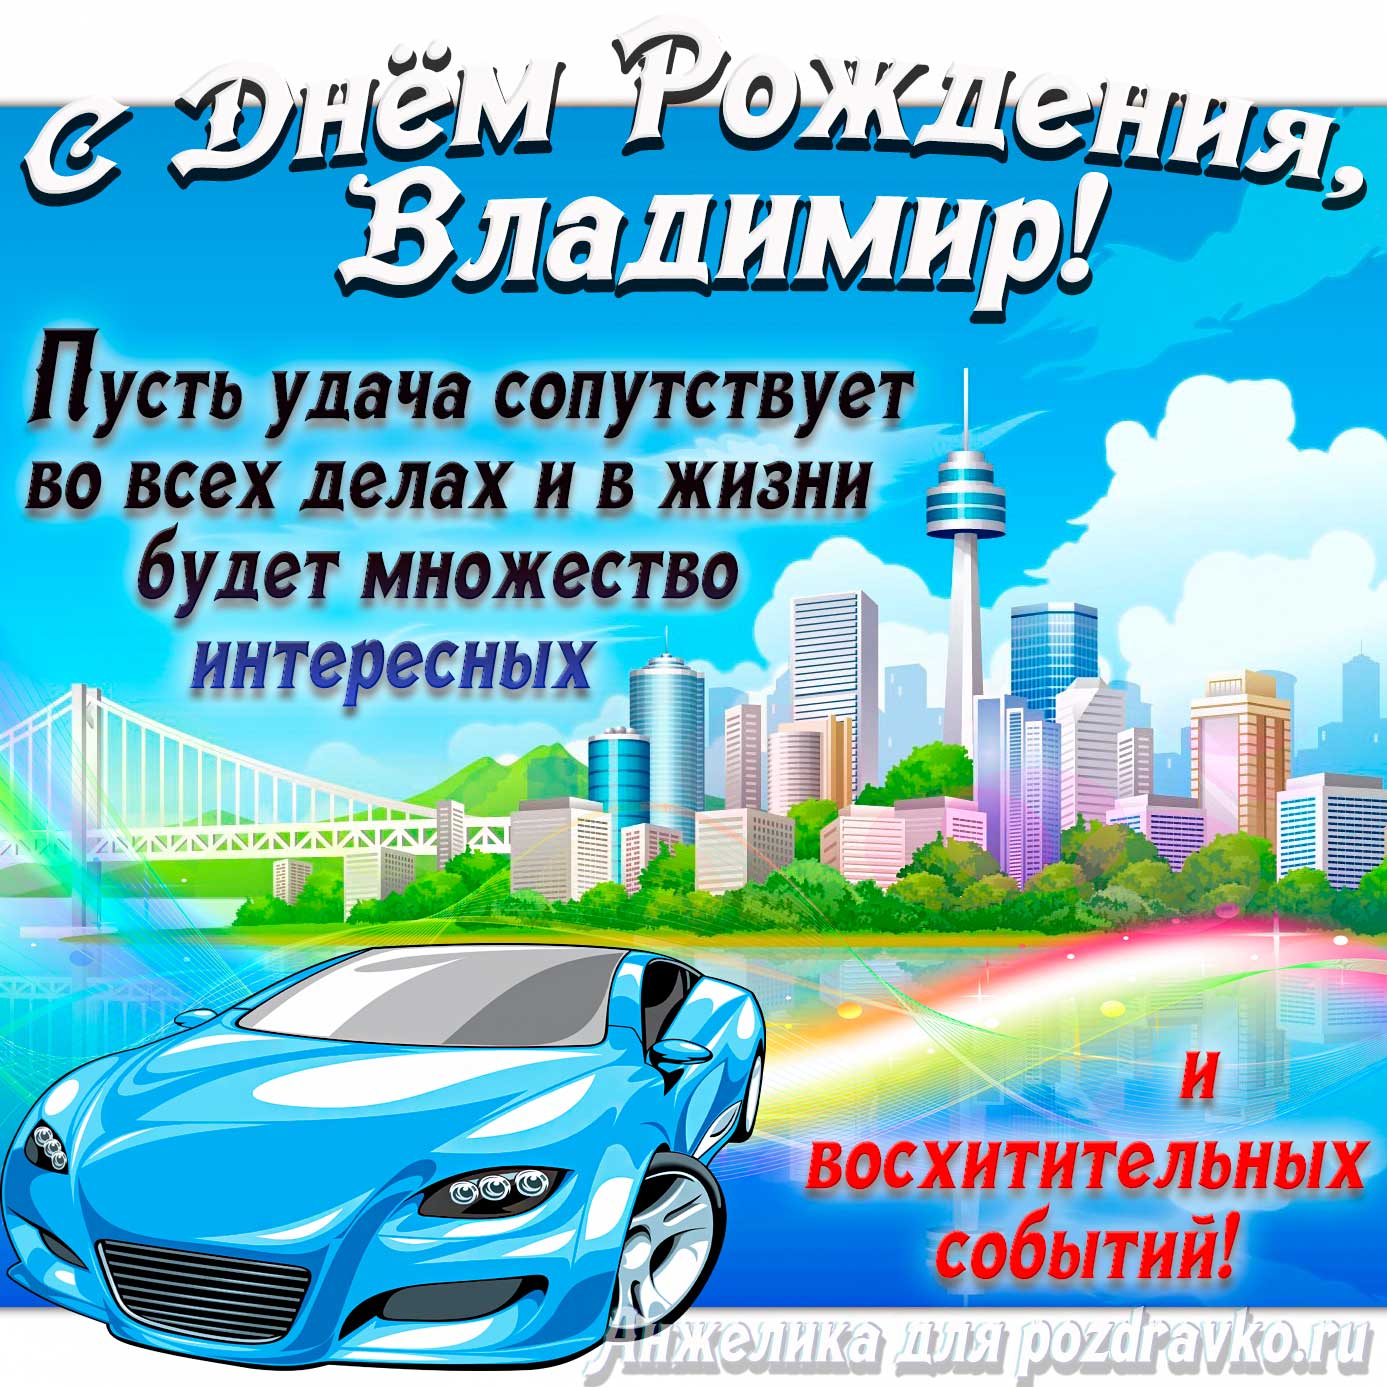 Открытка - с Днём Рождения Владимир с голубой машиной и пожеланием. Скачать бесплатно или отправить картинку.